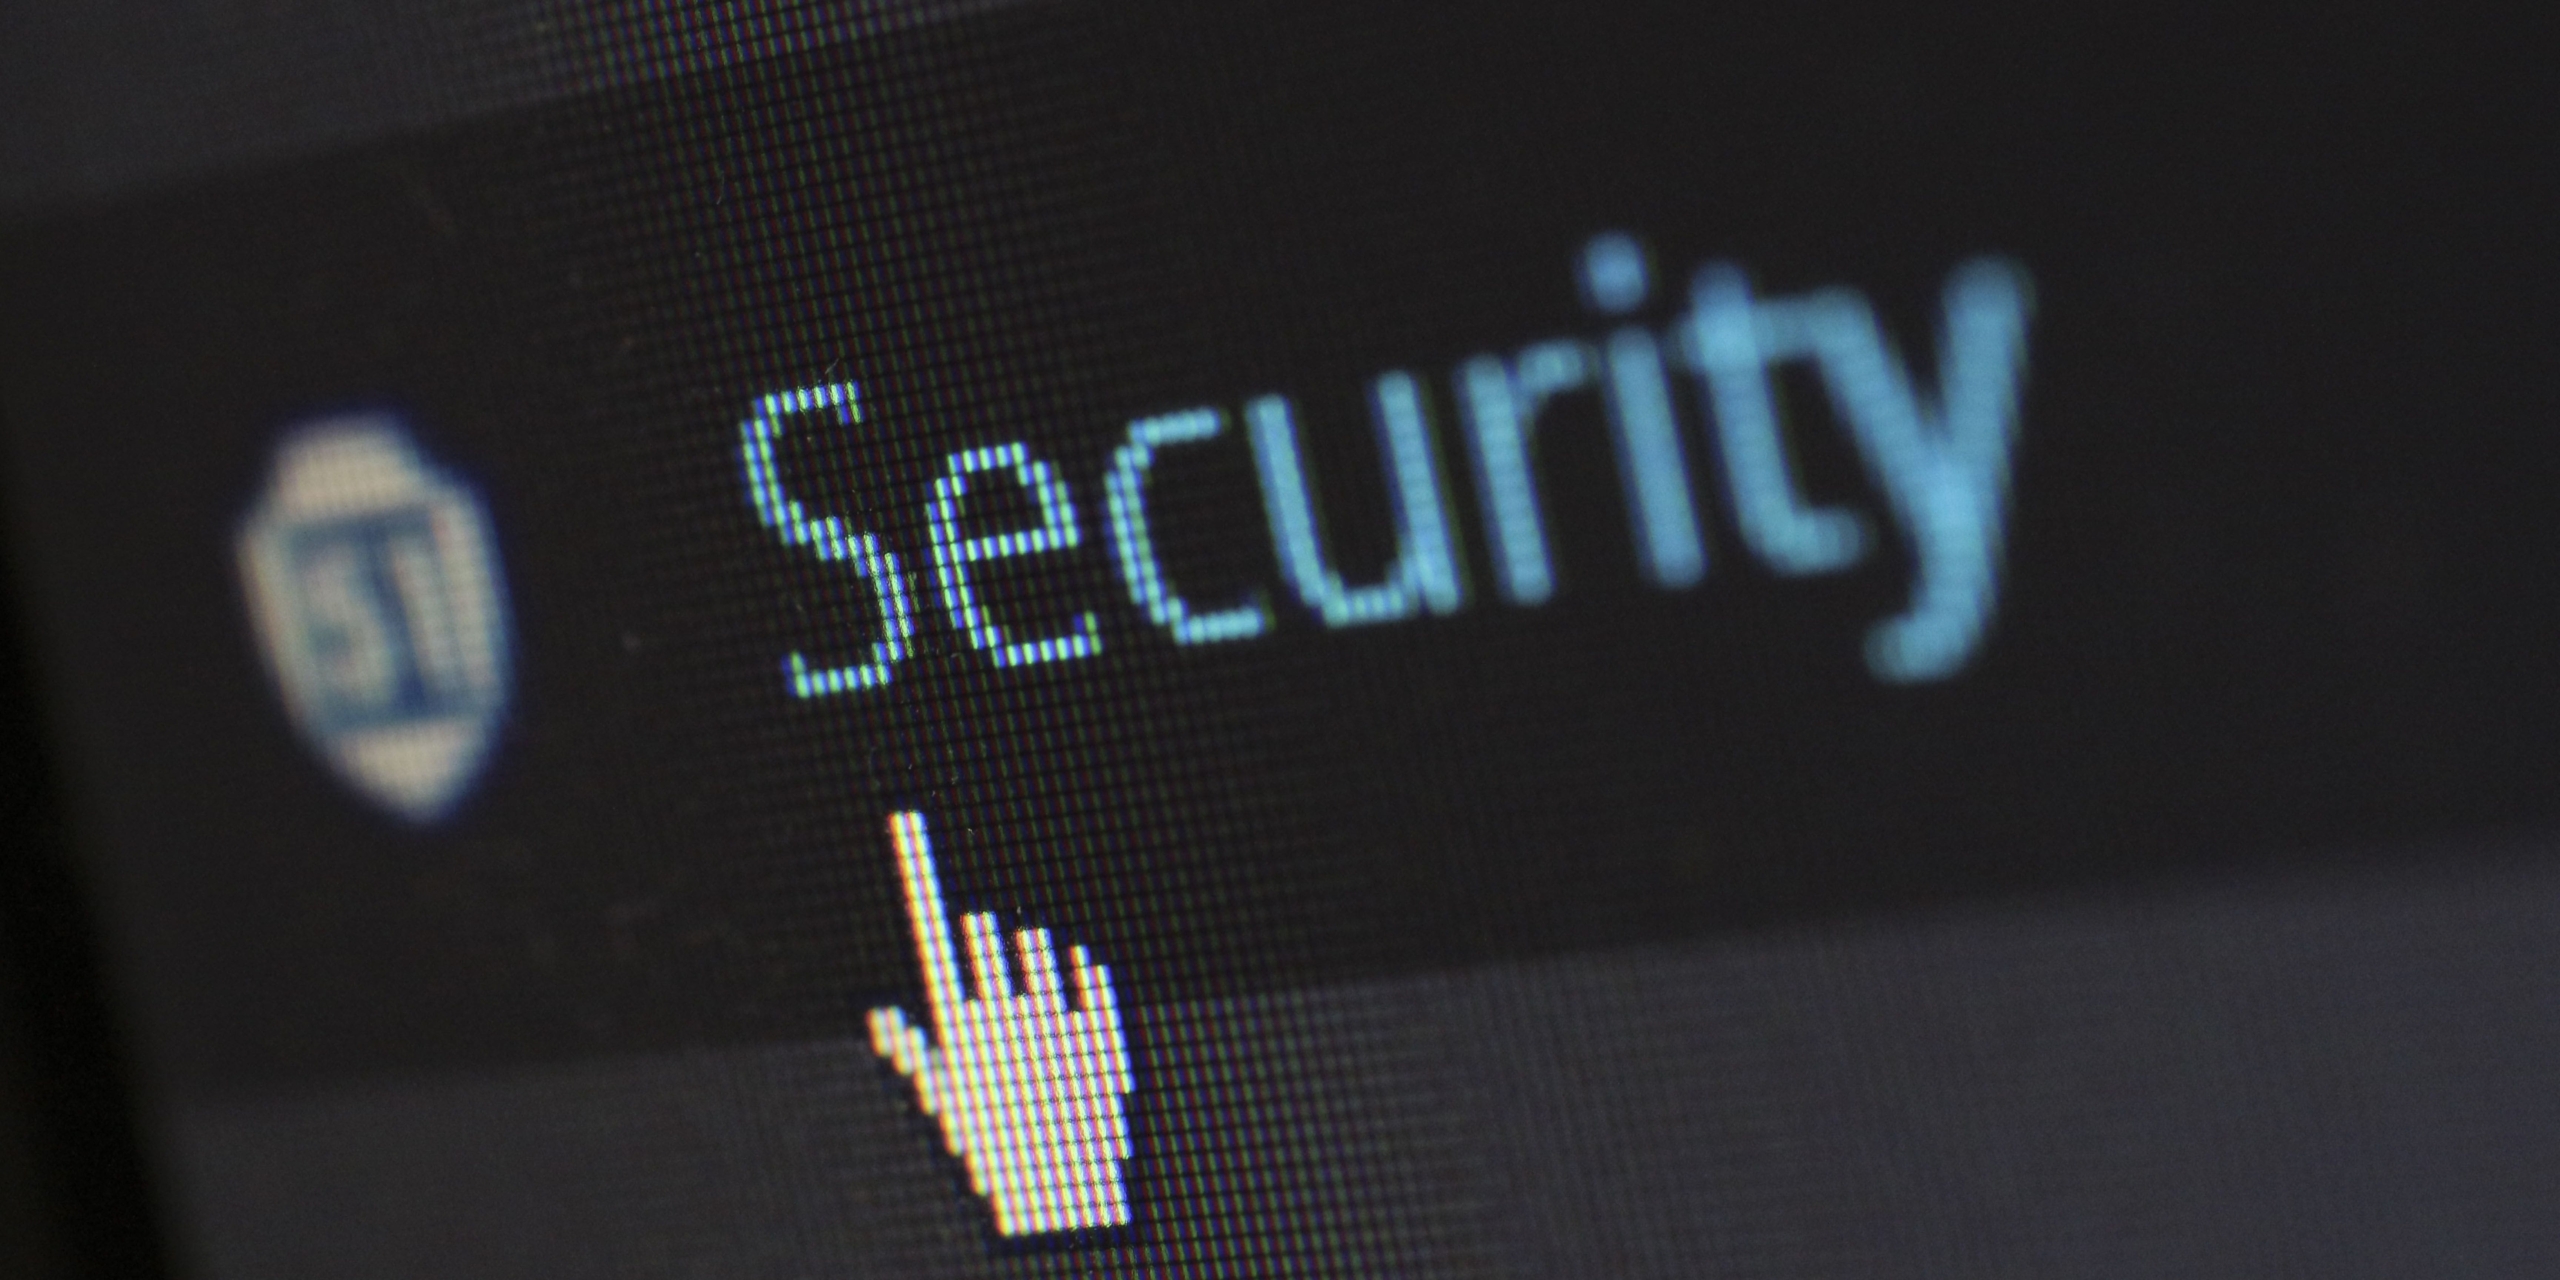 Post precedente: Nuove iniziative contro gli attacchi informatici: pubblicato il Decreto Cybersicurezza